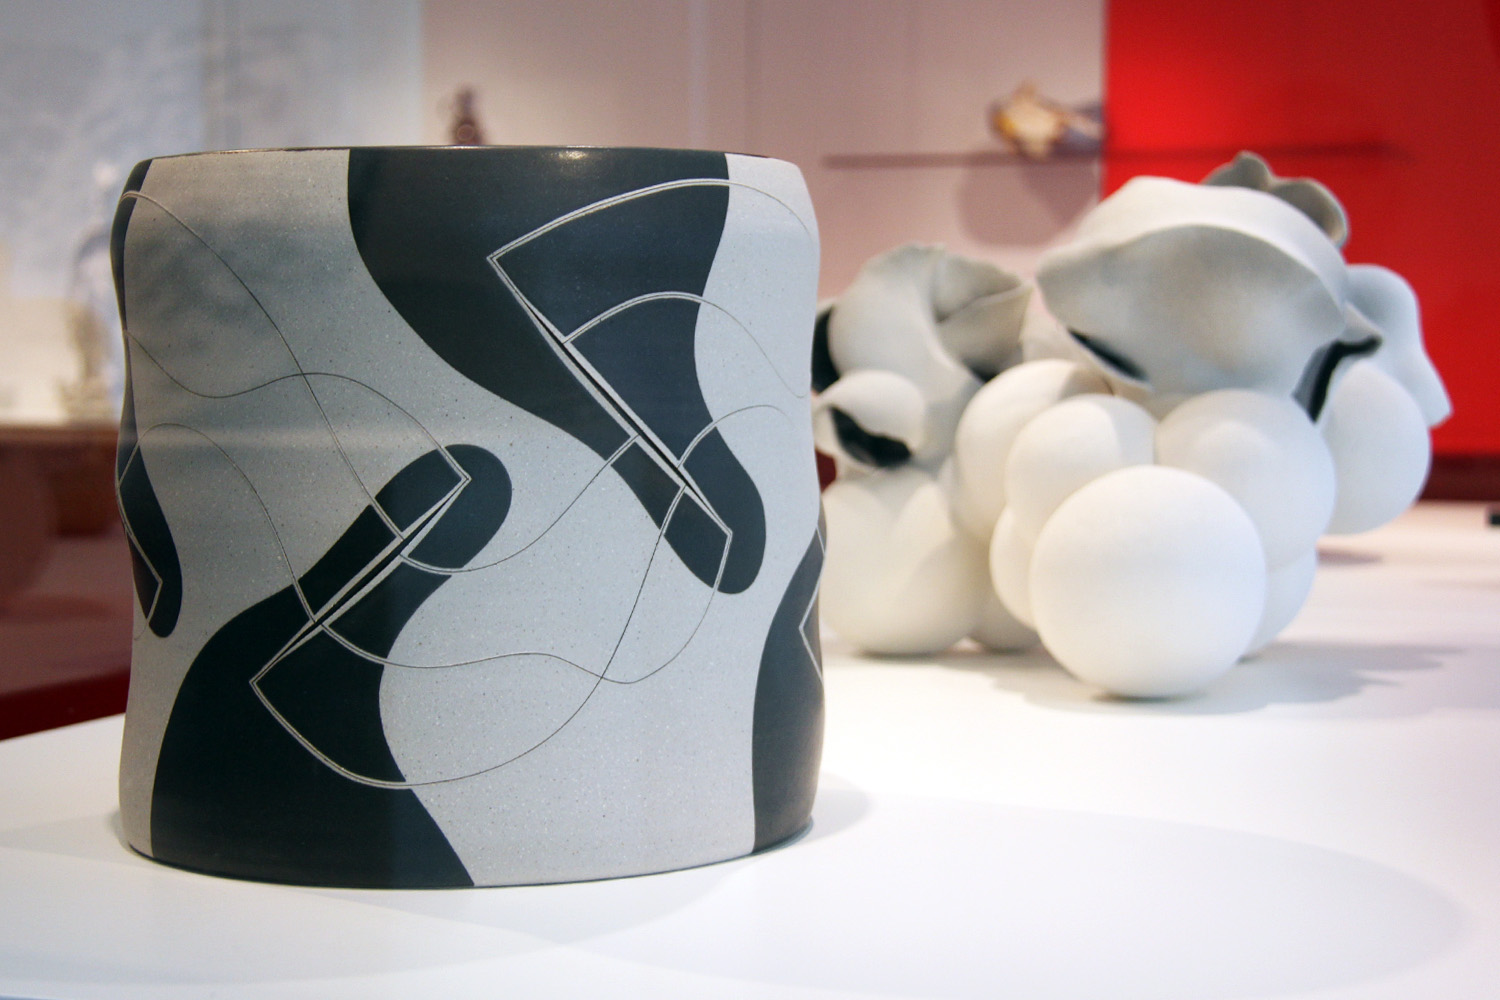 Contemporary ceramics at the Gardiner Museum